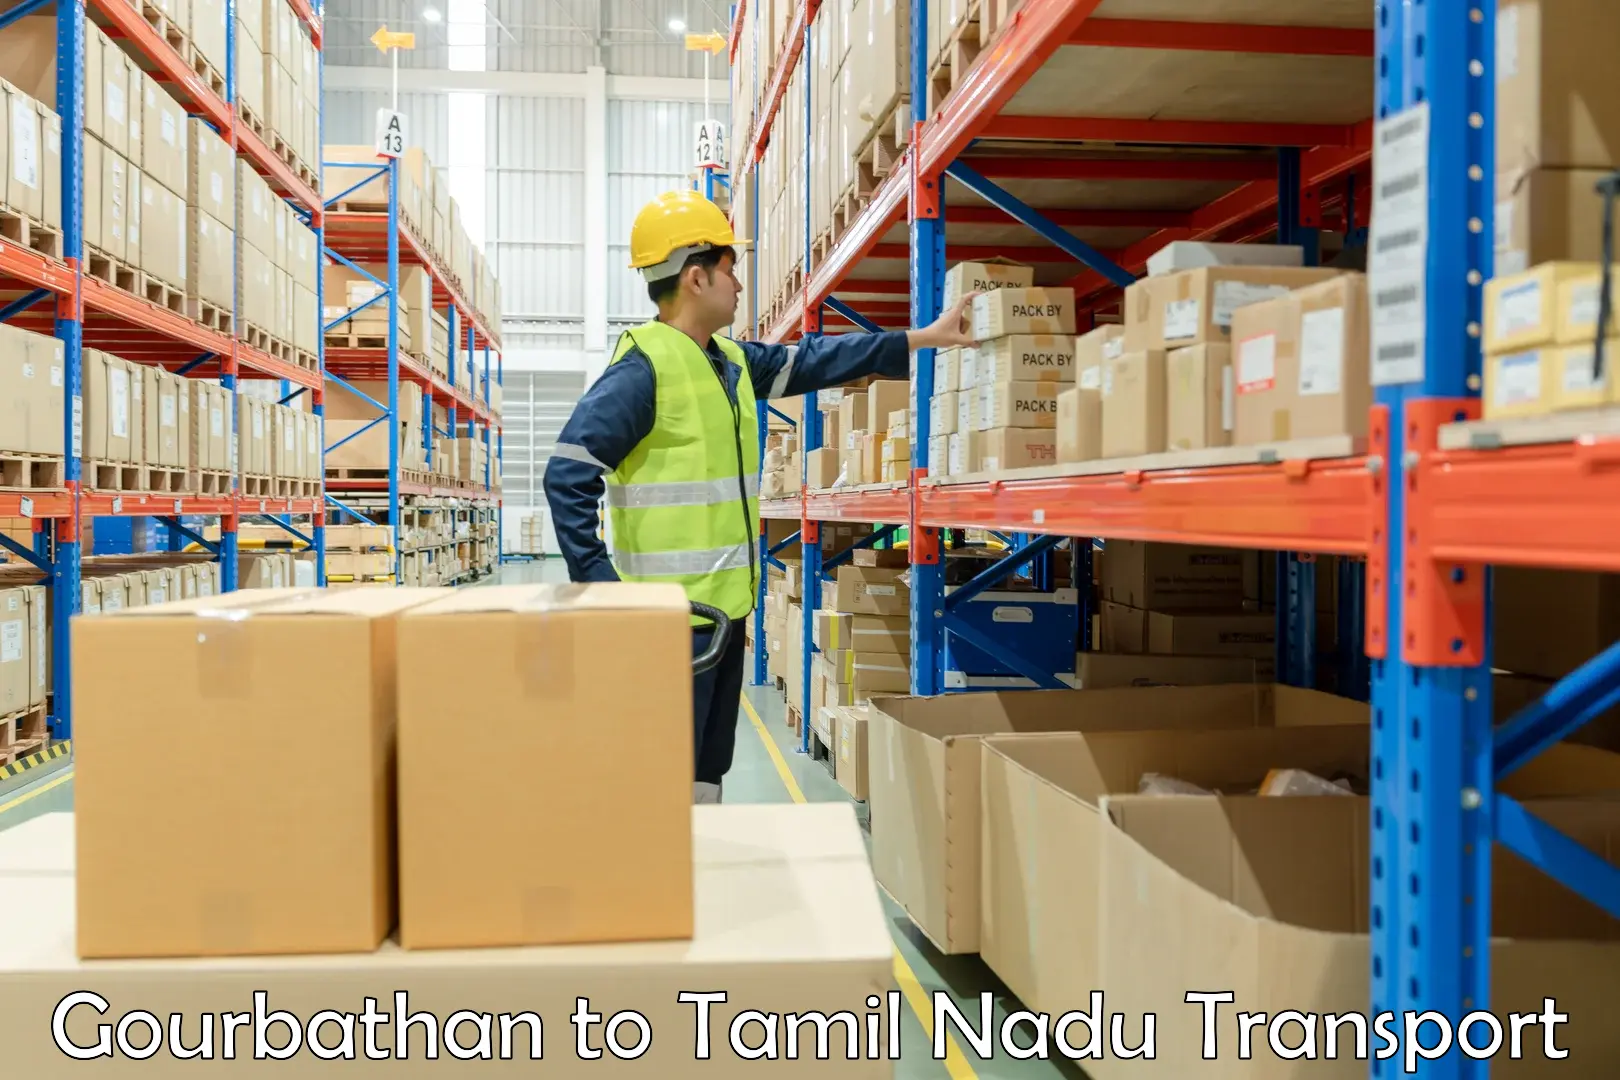 Two wheeler parcel service Gourbathan to Chennai Port